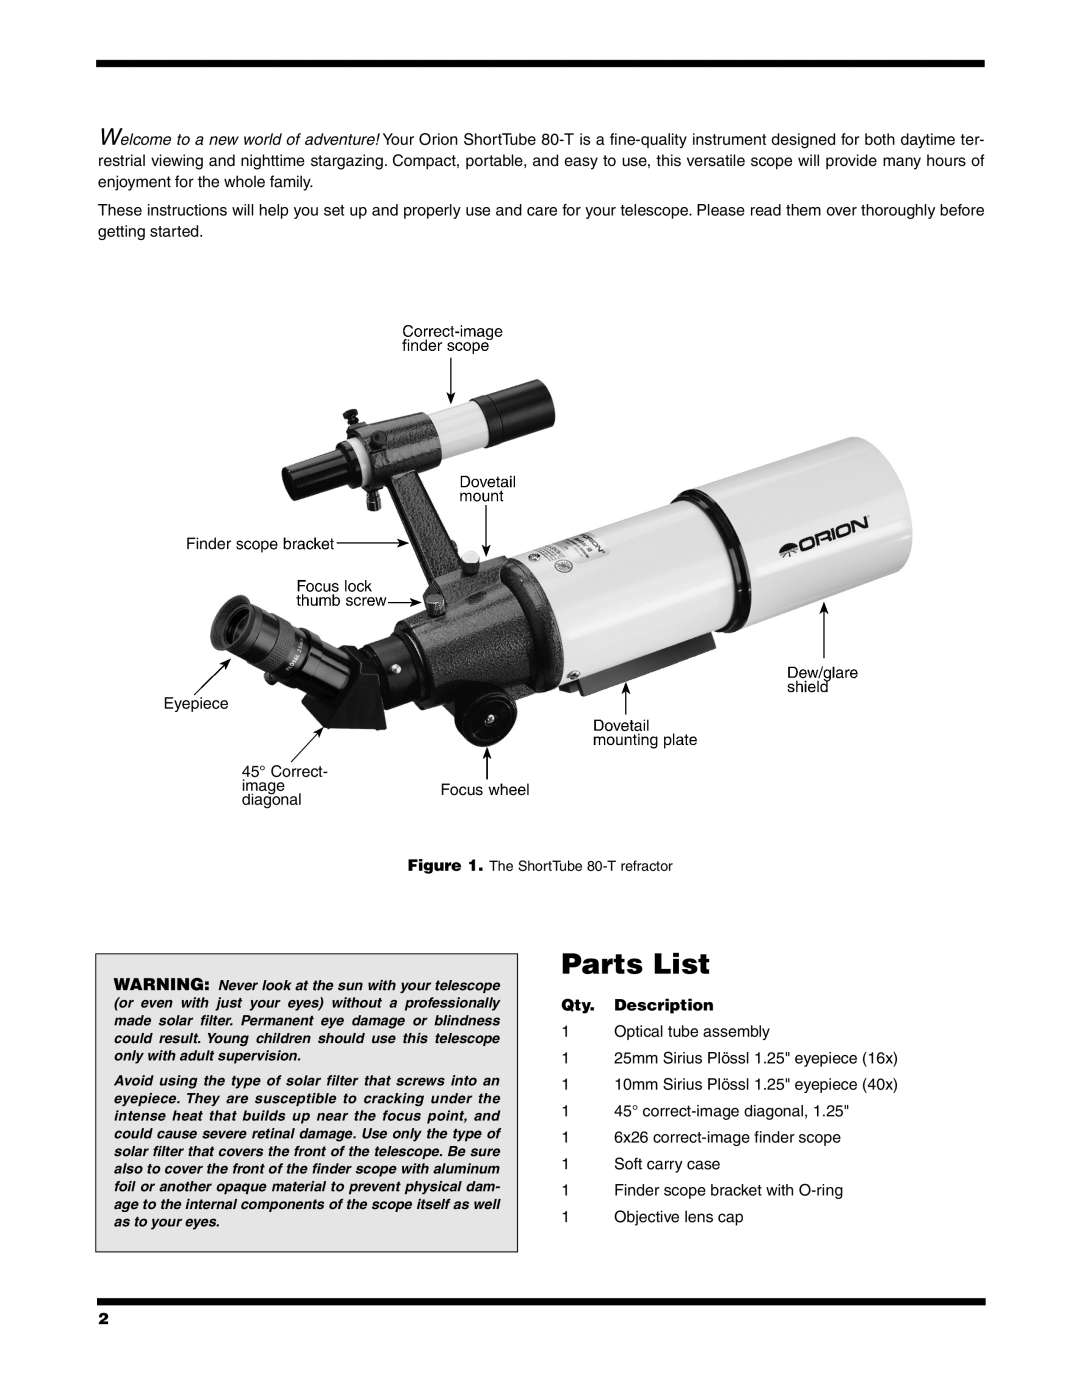 Orion 9946 instruction manual Parts List, Qty. Description 